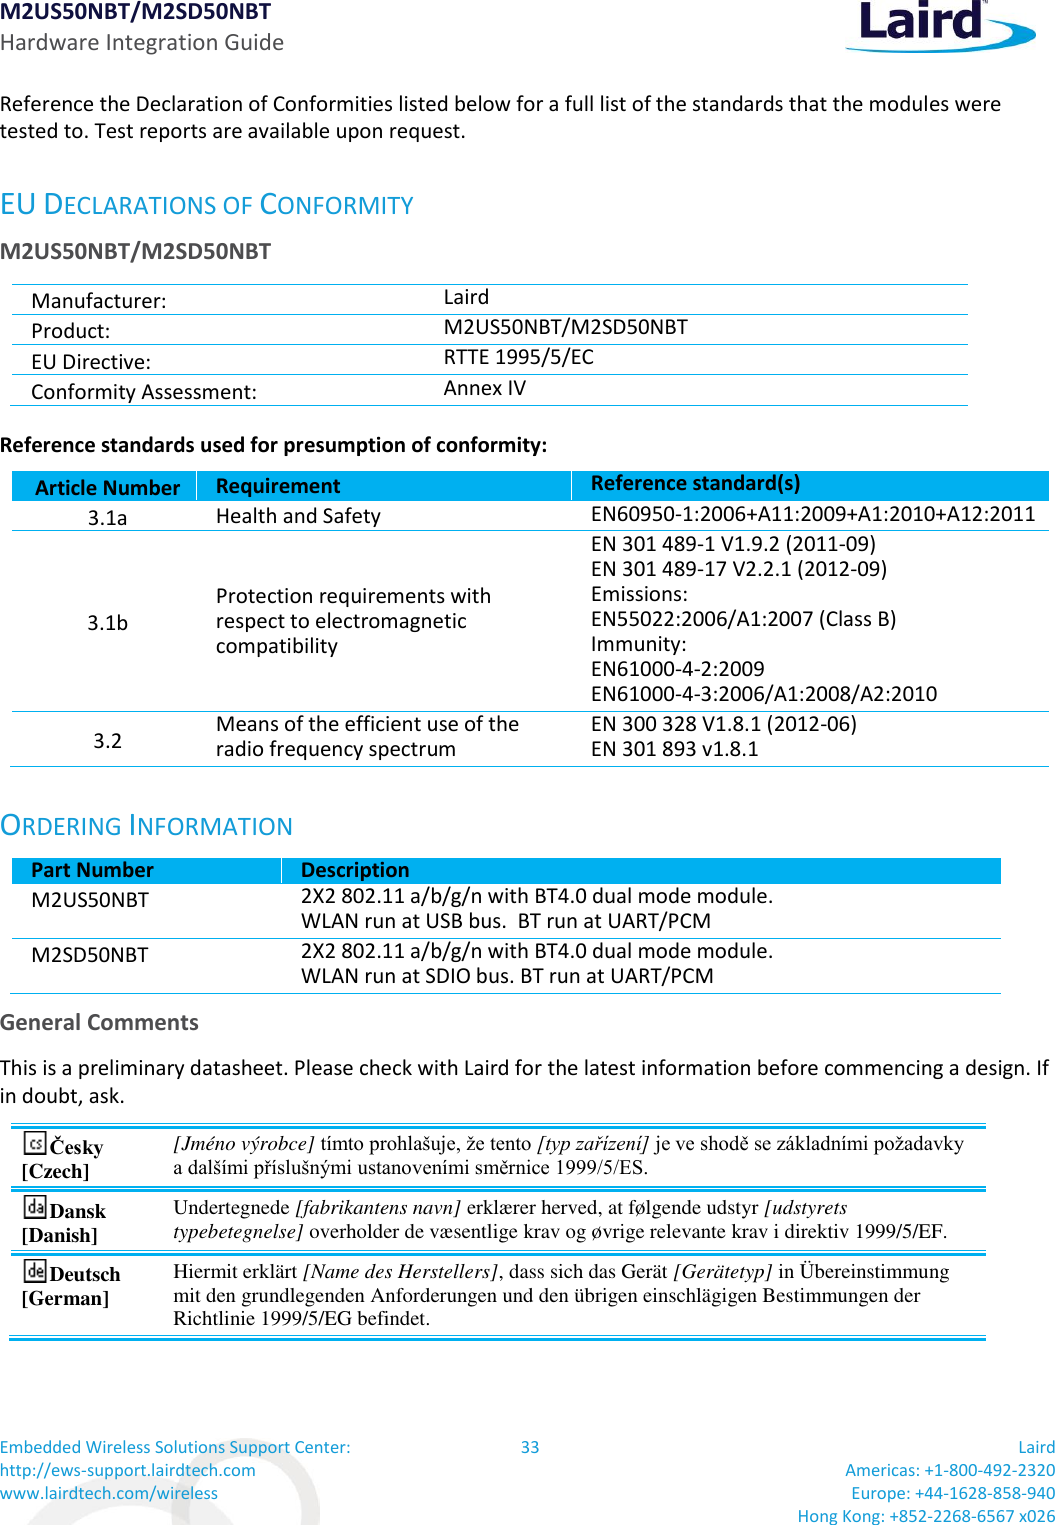 M2US50NBT/M2SD50NBT Hardware Integration Guide Embedded Wireless Solutions Support Center: http://ews-support.lairdtech.com www.lairdtech.com/wireless 33 Laird  Americas: +1-800-492-2320 Europe: +44-1628-858-940 Hong Kong: +852-2268-6567 x026  Reference the Declaration of Conformities listed below for a full list of the standards that the modules were tested to. Test reports are available upon request. EU DECLARATIONS OF CONFORMITY M2US50NBT/M2SD50NBT Manufacturer: Laird  Product: M2US50NBT/M2SD50NBT EU Directive: RTTE 1995/5/EC Conformity Assessment: Annex IV Reference standards used for presumption of conformity:  Article Number Requirement Reference standard(s) 3.1a Health and Safety  EN60950-1:2006+A11:2009+A1:2010+A12:2011 3.1b Protection requirements with respect to electromagnetic compatibility EN 301 489-1 V1.9.2 (2011-09) EN 301 489-17 V2.2.1 (2012-09) Emissions: EN55022:2006/A1:2007 (Class B) Immunity: EN61000-4-2:2009 EN61000-4-3:2006/A1:2008/A2:2010 3.2 Means of the efficient use of the radio frequency spectrum EN 300 328 V1.8.1 (2012-06) EN 301 893 v1.8.1 ORDERING INFORMATION Part Number Description M2US50NBT 2X2 802.11 a/b/g/n with BT4.0 dual mode module. WLAN run at USB bus.  BT run at UART/PCM M2SD50NBT 2X2 802.11 a/b/g/n with BT4.0 dual mode module. WLAN run at SDIO bus. BT run at UART/PCM General Comments This is a preliminary datasheet. Please check with Laird for the latest information before commencing a design. If in doubt, ask. Česky [Czech] [Jméno výrobce] tímto prohlašuje, že tento [typ zařízení] je ve shodě se základními požadavky a dalšími příslušnými ustanoveními směrnice 1999/5/ES. Dansk [Danish] Undertegnede [fabrikantens navn] erklærer herved, at følgende udstyr [udstyrets typebetegnelse] overholder de væsentlige krav og øvrige relevante krav i direktiv 1999/5/EF. Deutsch [German] Hiermit erklärt [Name des Herstellers], dass sich das Gerät [Gerätetyp] in Übereinstimmung mit den grundlegenden Anforderungen und den übrigen einschlägigen Bestimmungen der Richtlinie 1999/5/EG befindet. 